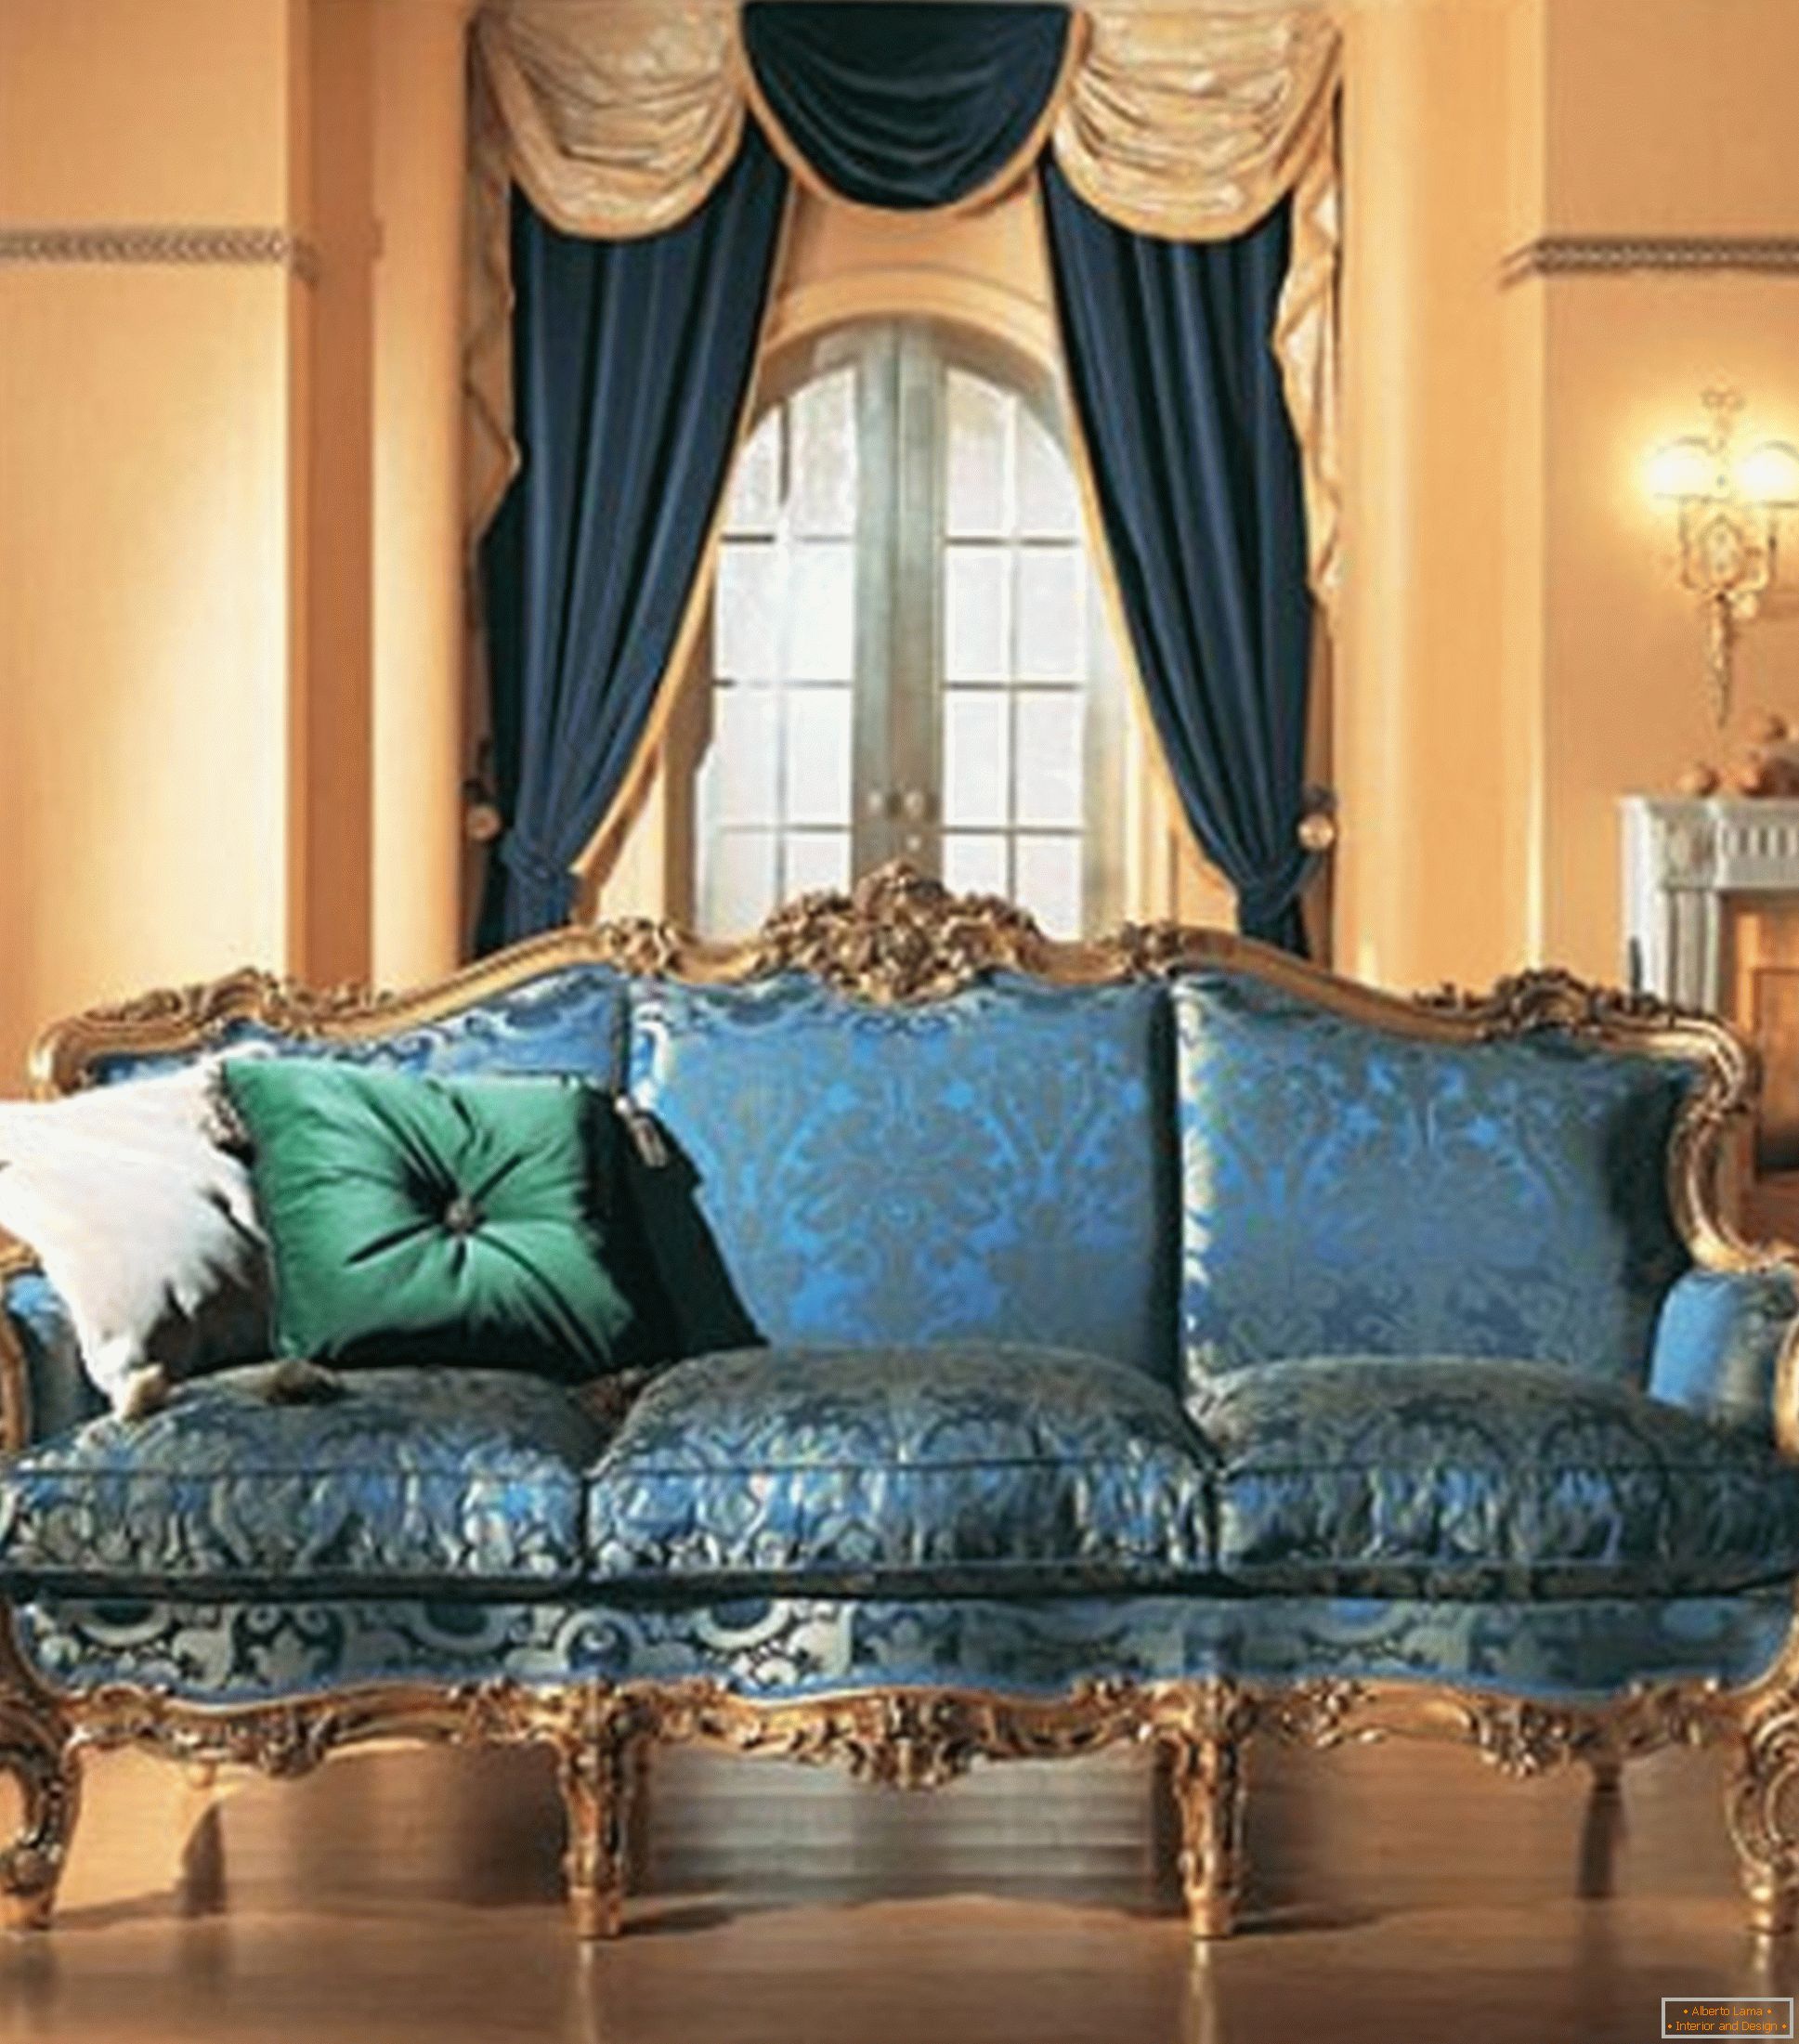 A kontrasztos színek kombinációja a nappali dekorációjában a barokk stílusban.